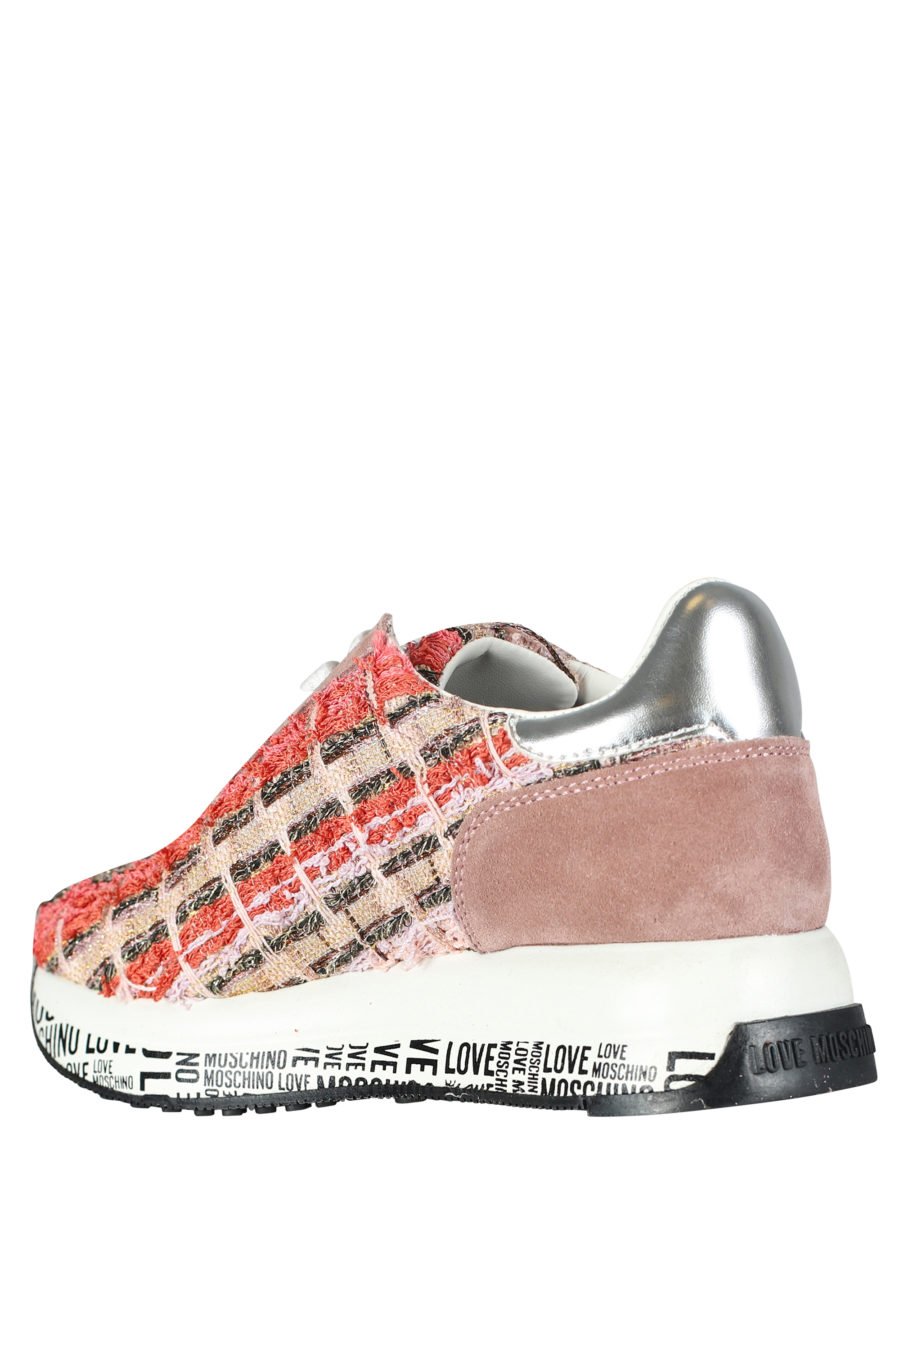 Zapatillas multi color en tejido "tweet" - IMG 5253